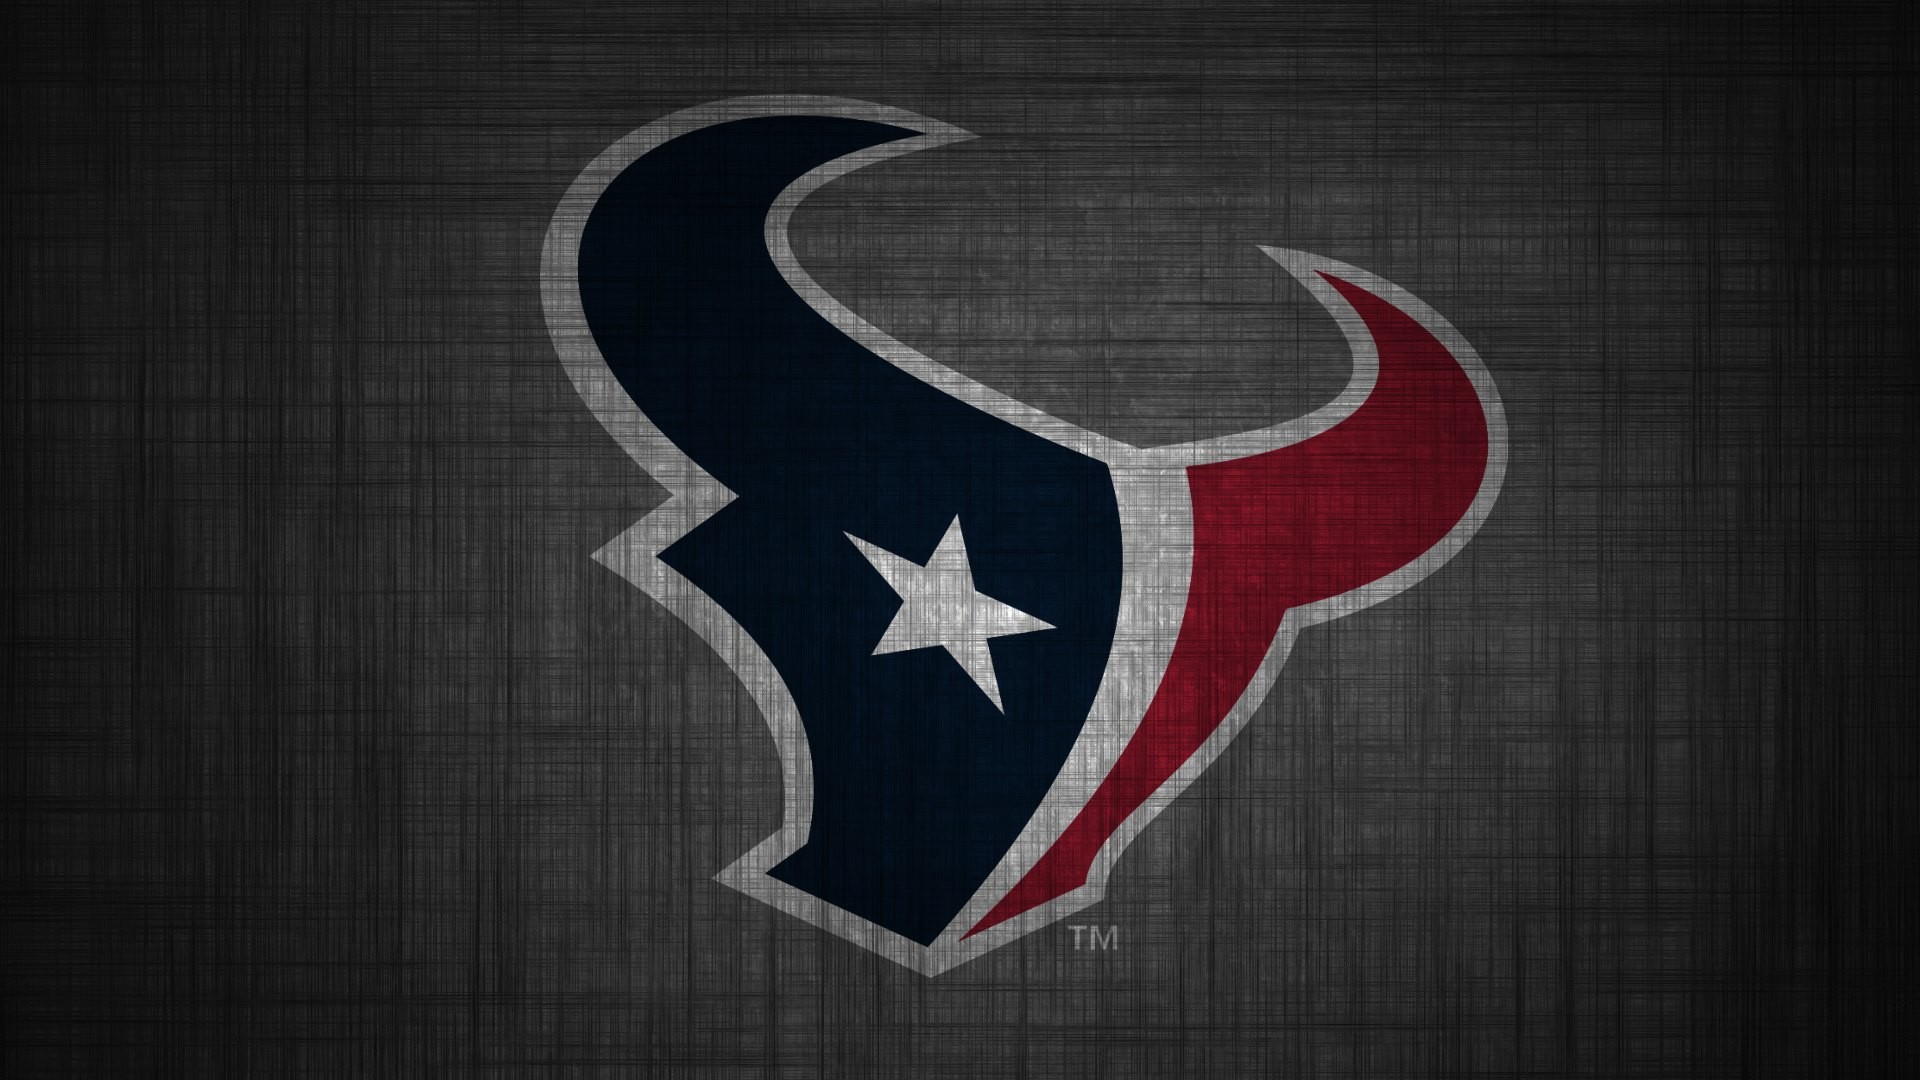 Houston Texans Logo Wallpaper - Indianapolis Colts Versus Houston Texans - HD Wallpaper 